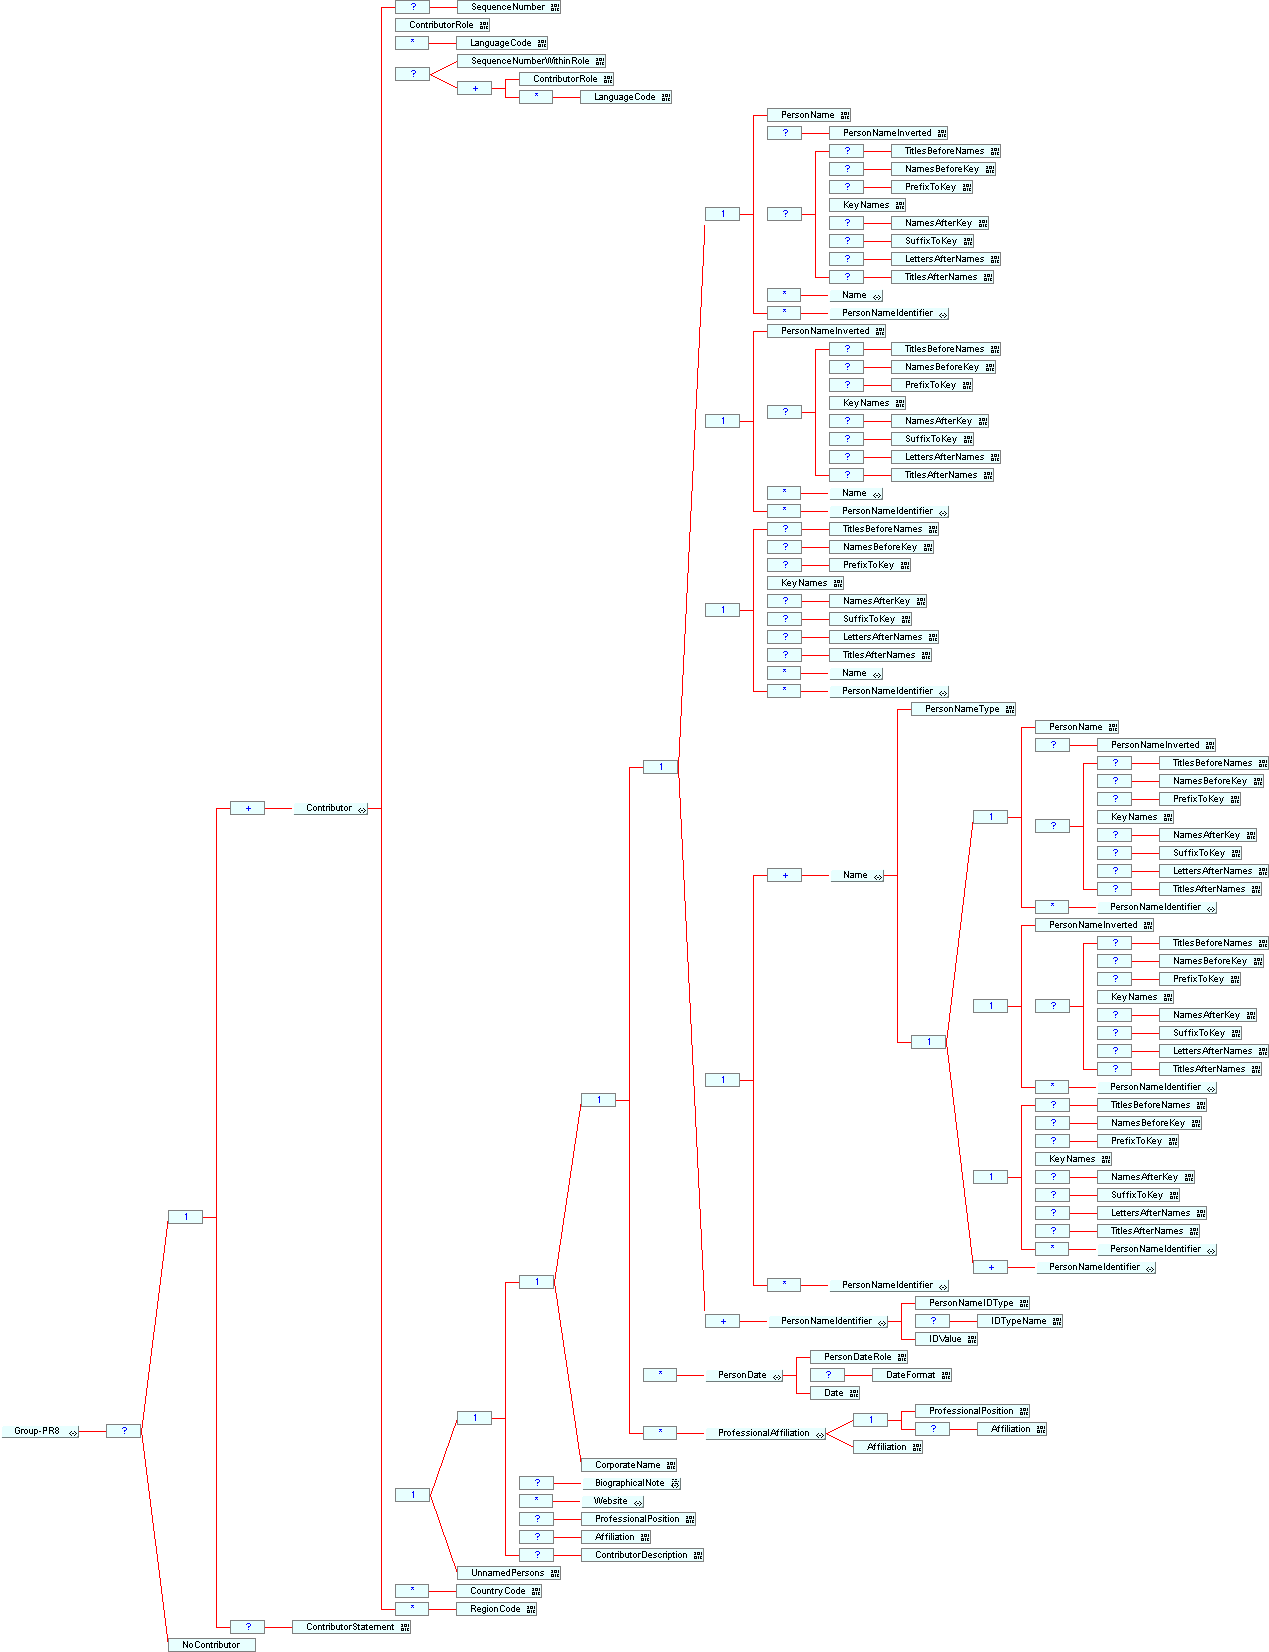 Group PR8 structure diagram